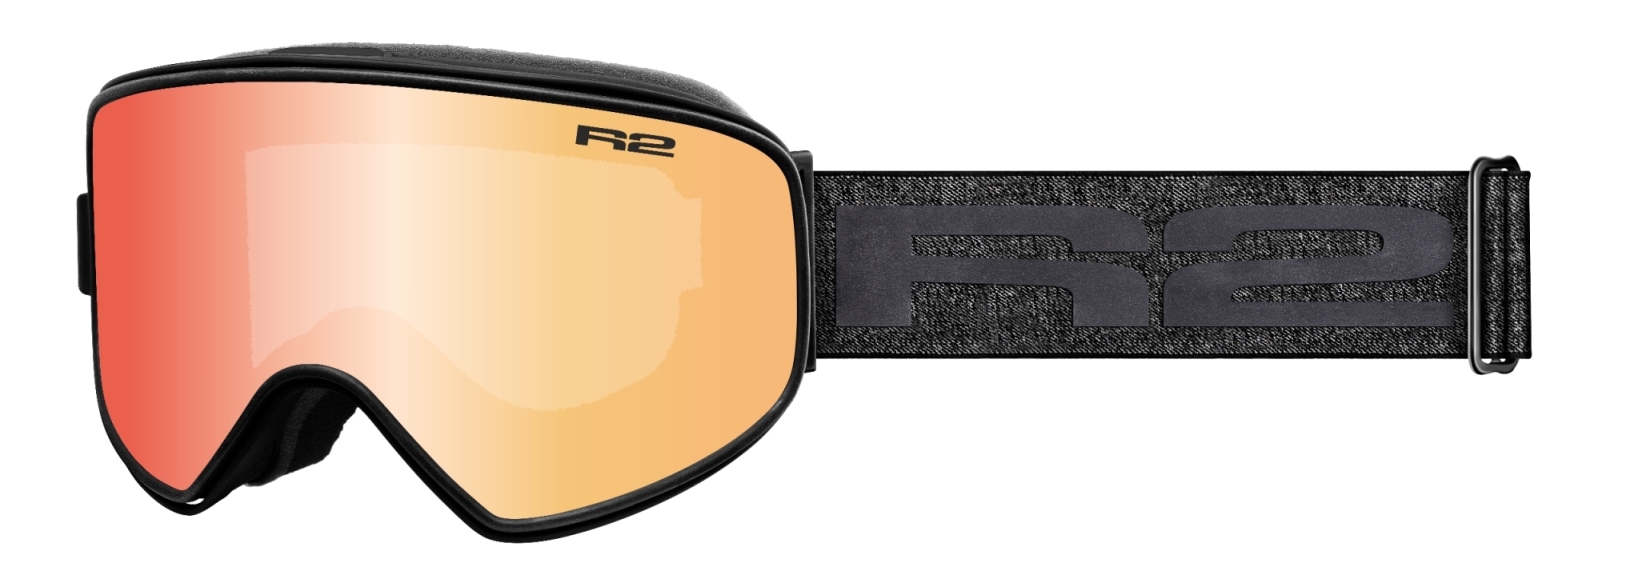 Lyžařské brýle R2 Avalanche Barva: černá/modré sklo